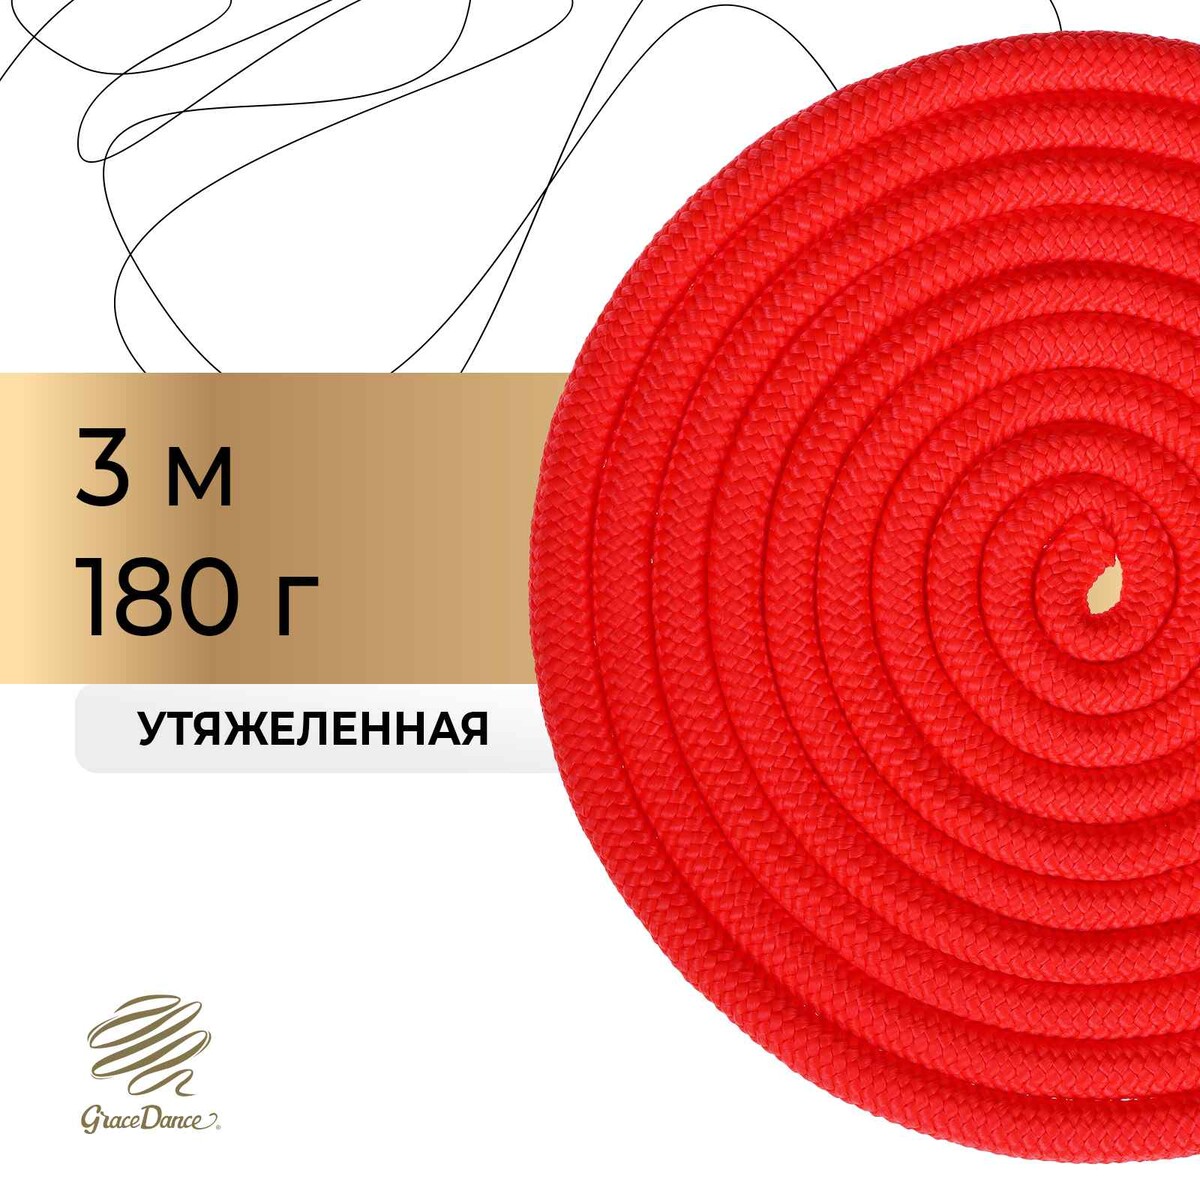 Скакалка для художественной гимнастики утяжеленная grace dance, 3 м, цвет красный скакалка гимнастическая ab255 3м красная